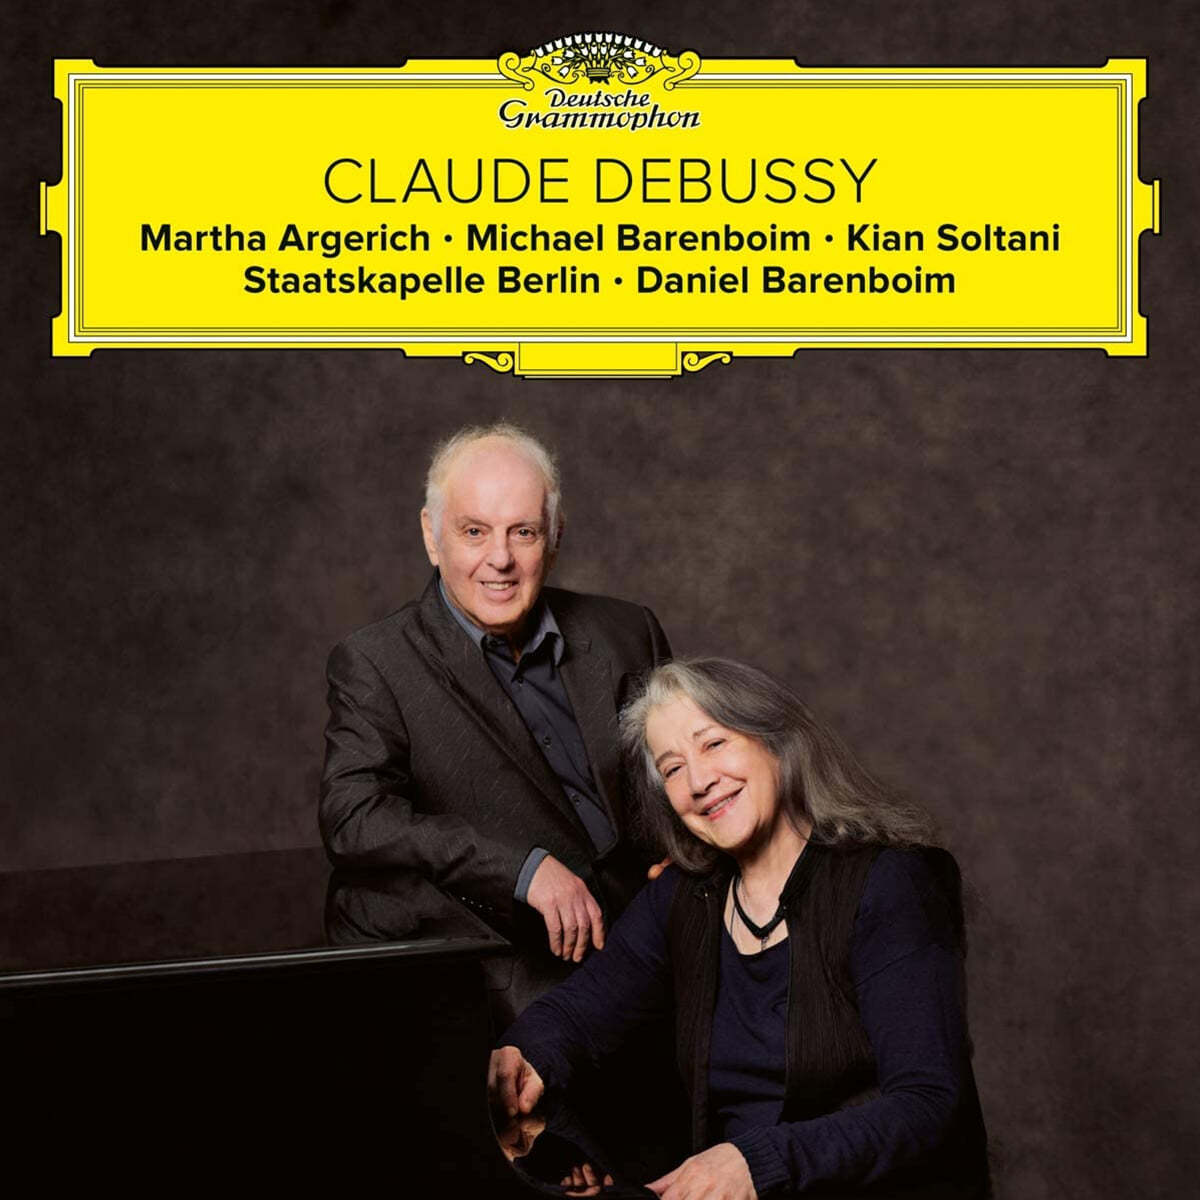 Daniel Barenboim / Martha Argerich 드뷔시: 피아노와 오케스트라를 위한 환상곡, 소나타 (Debussy: Fantasie, Violin Sonata) 